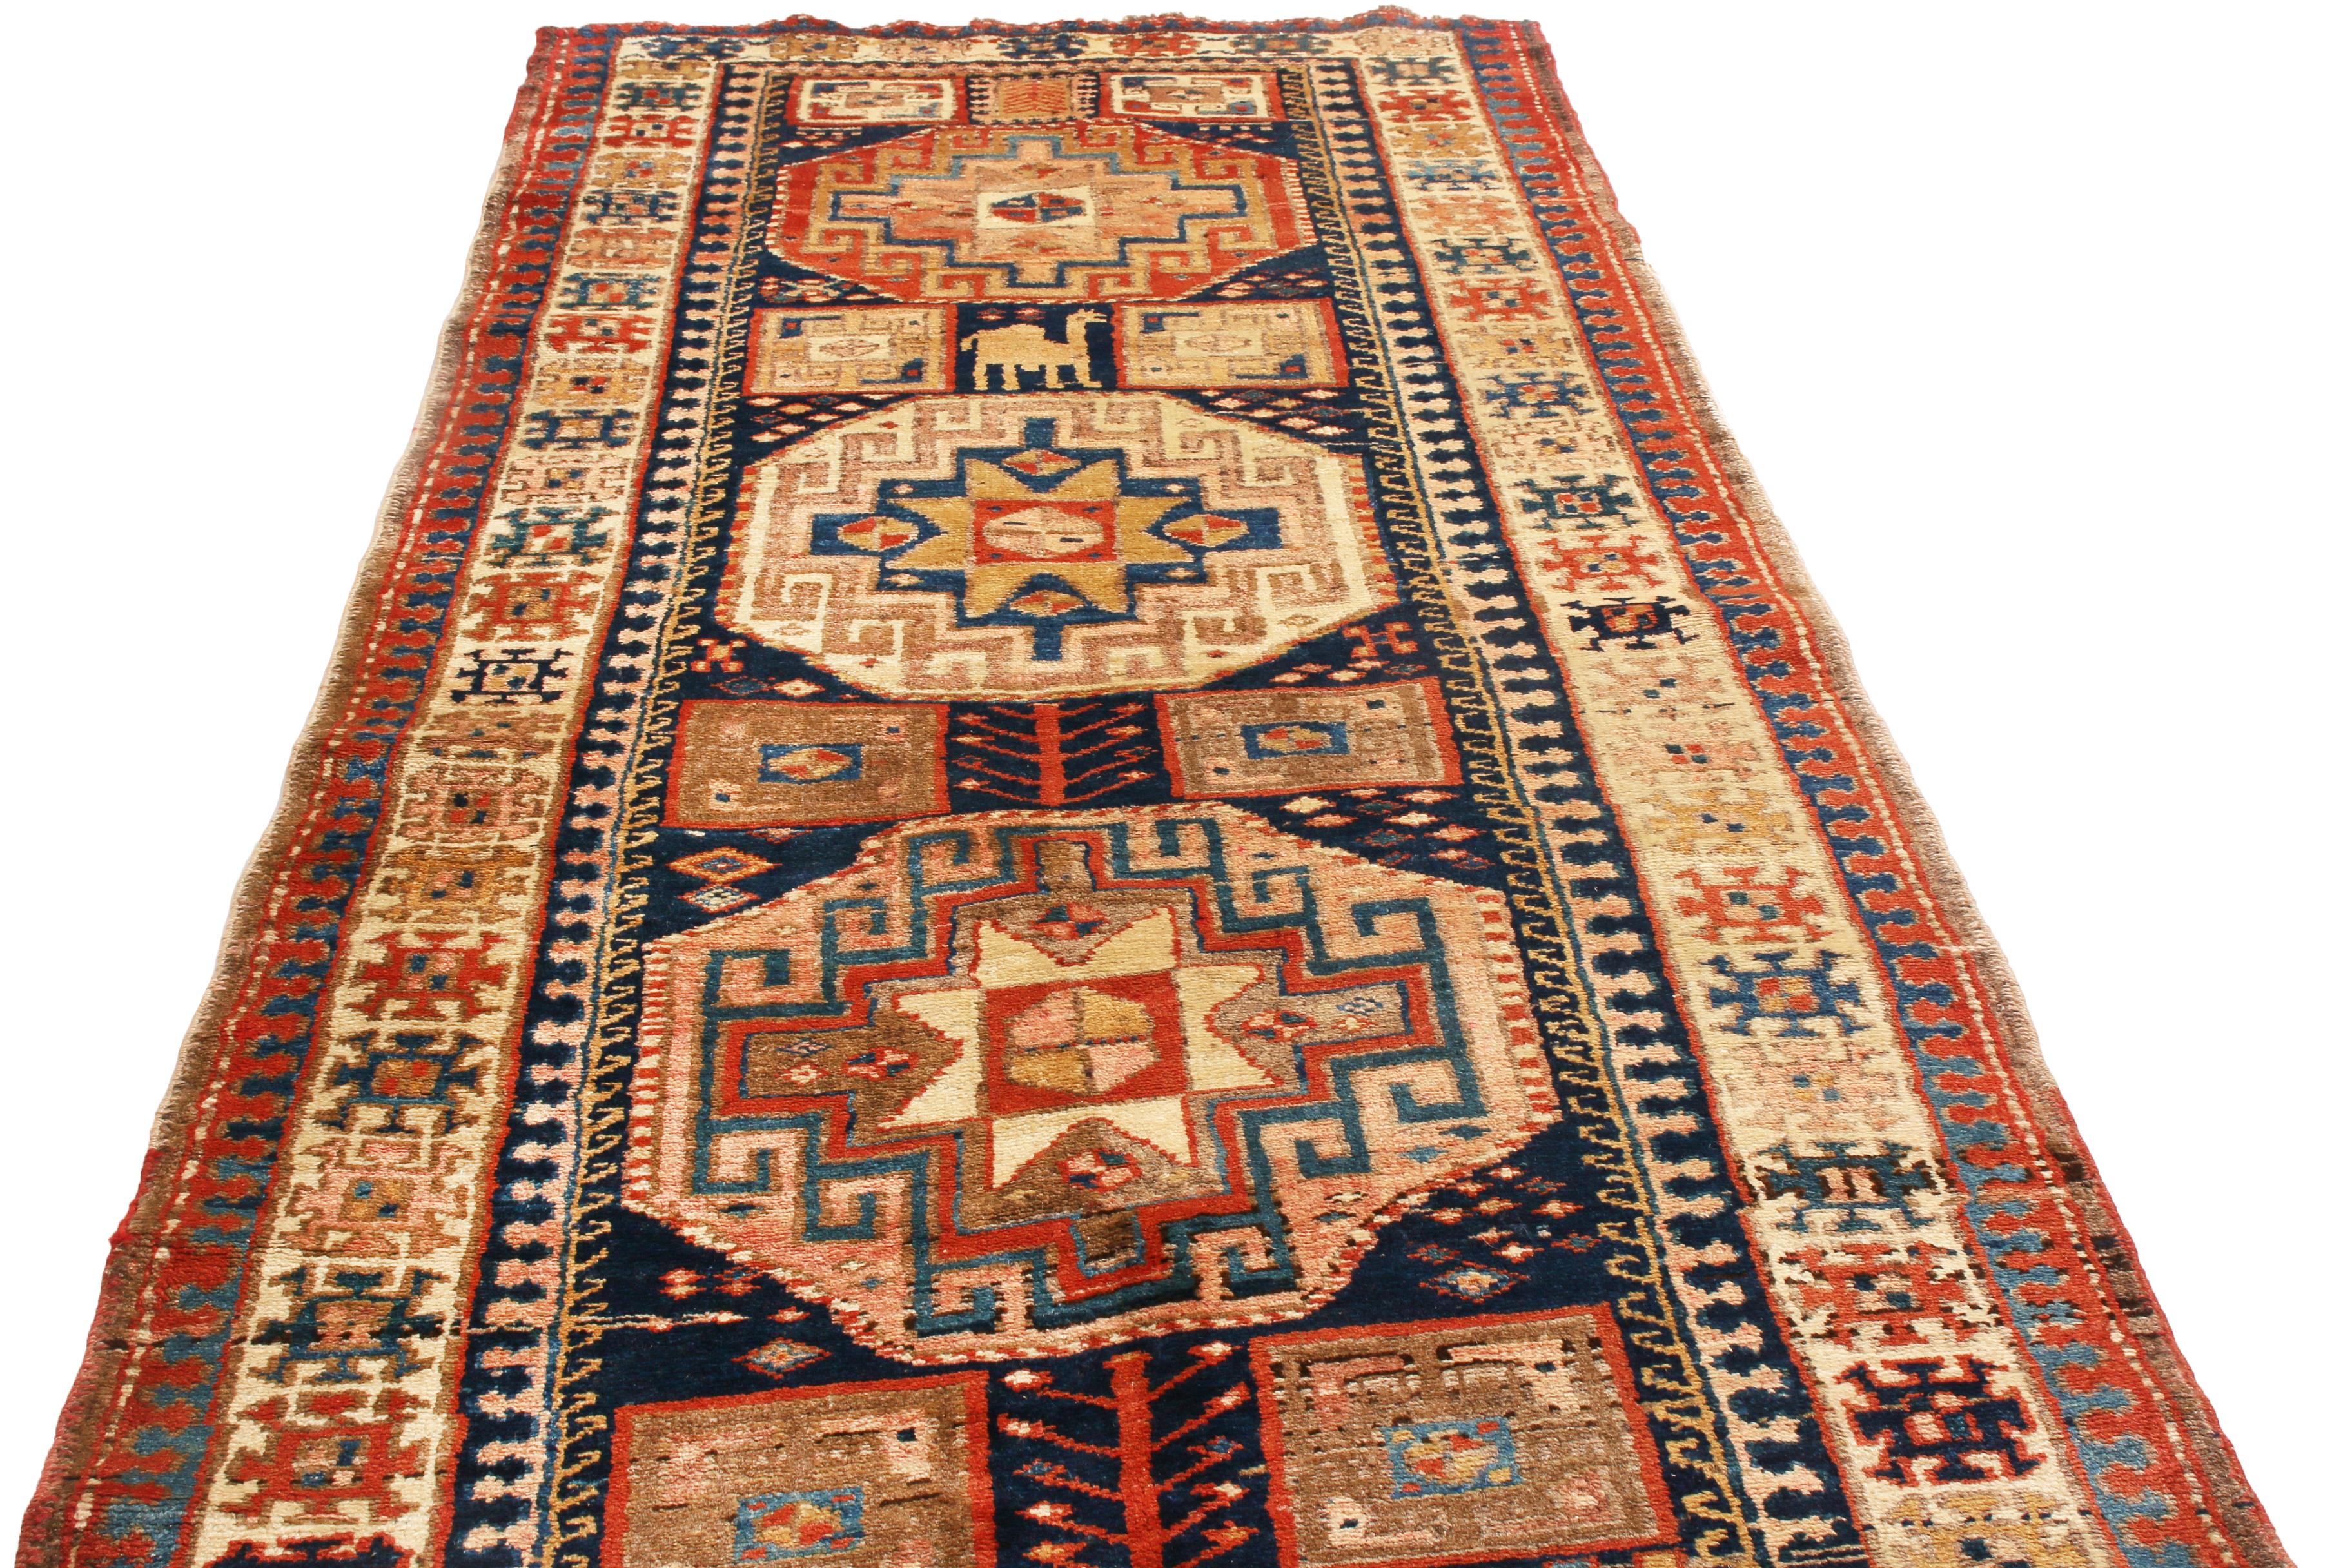 Originaire de Perse en 1880, ce chemin de table en laine perse antique noué à la main présente un motif nord-ouest distinct, qui témoigne d'un ensemble varié d'influences de Téhéran, Tabriz et d'autres régions tribales du XIXe siècle. Complétés par